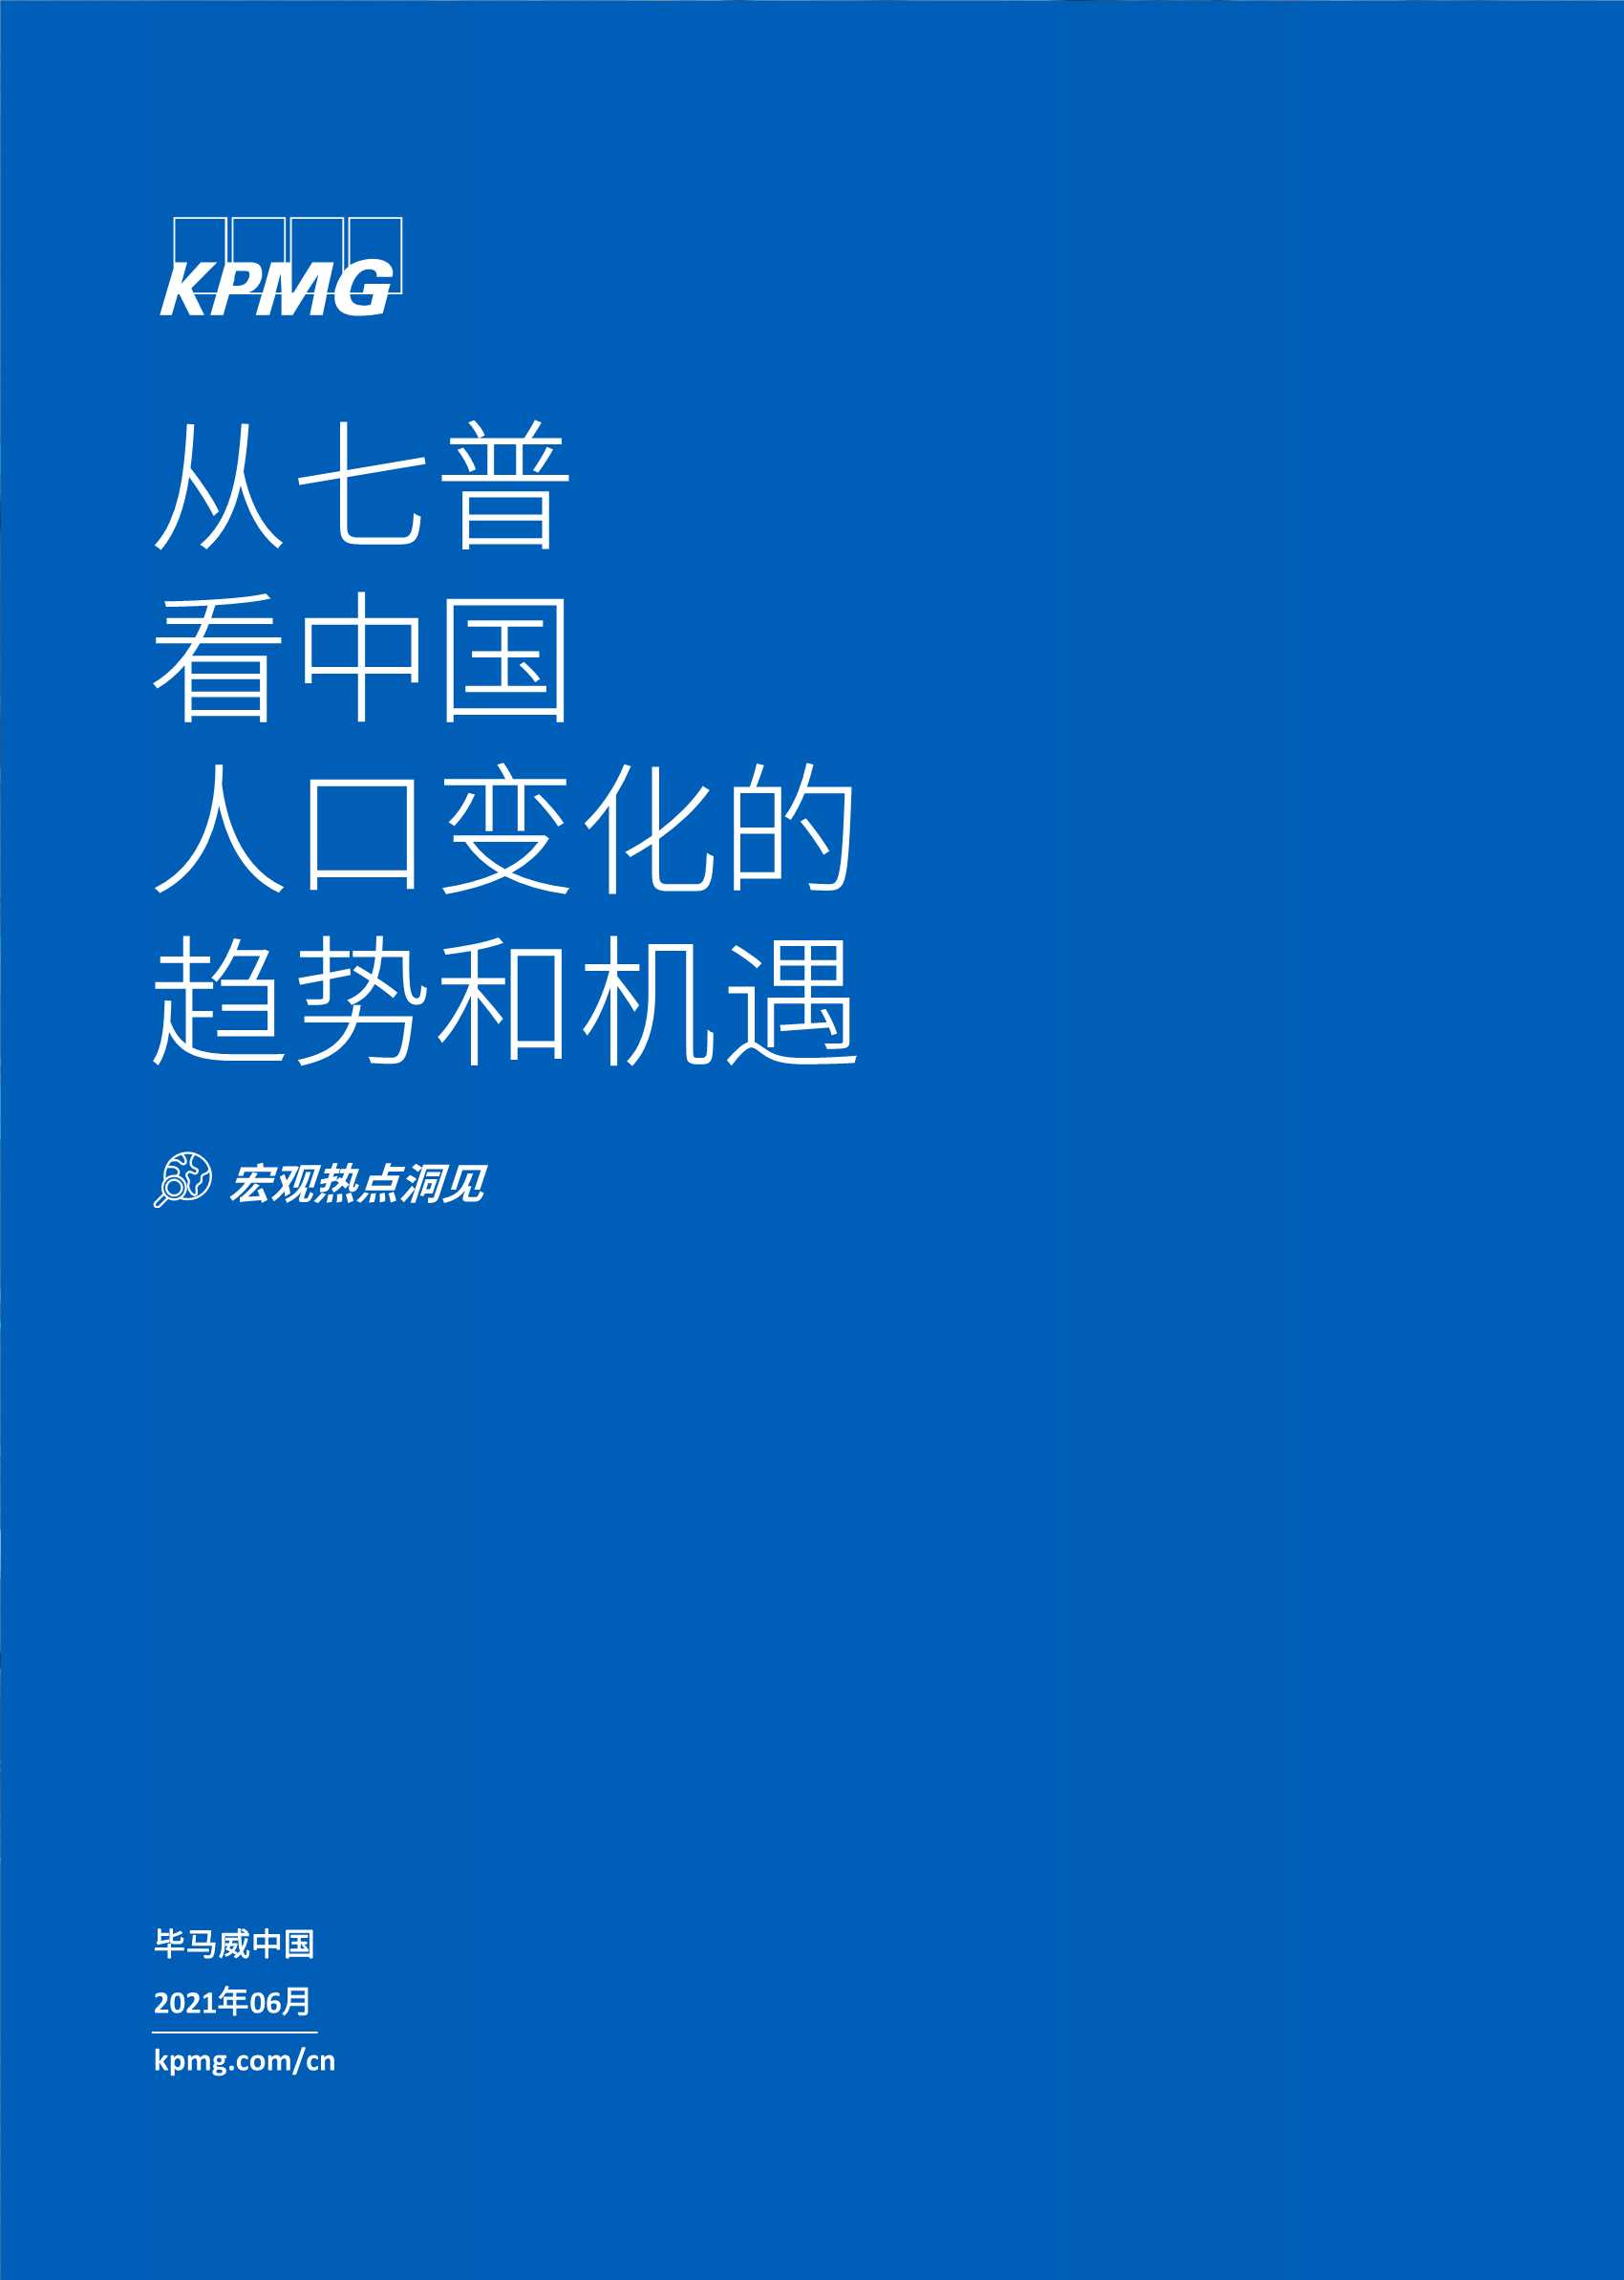 毕马威-从七普看中国人口变化的趋势和机遇-2021.06-24页